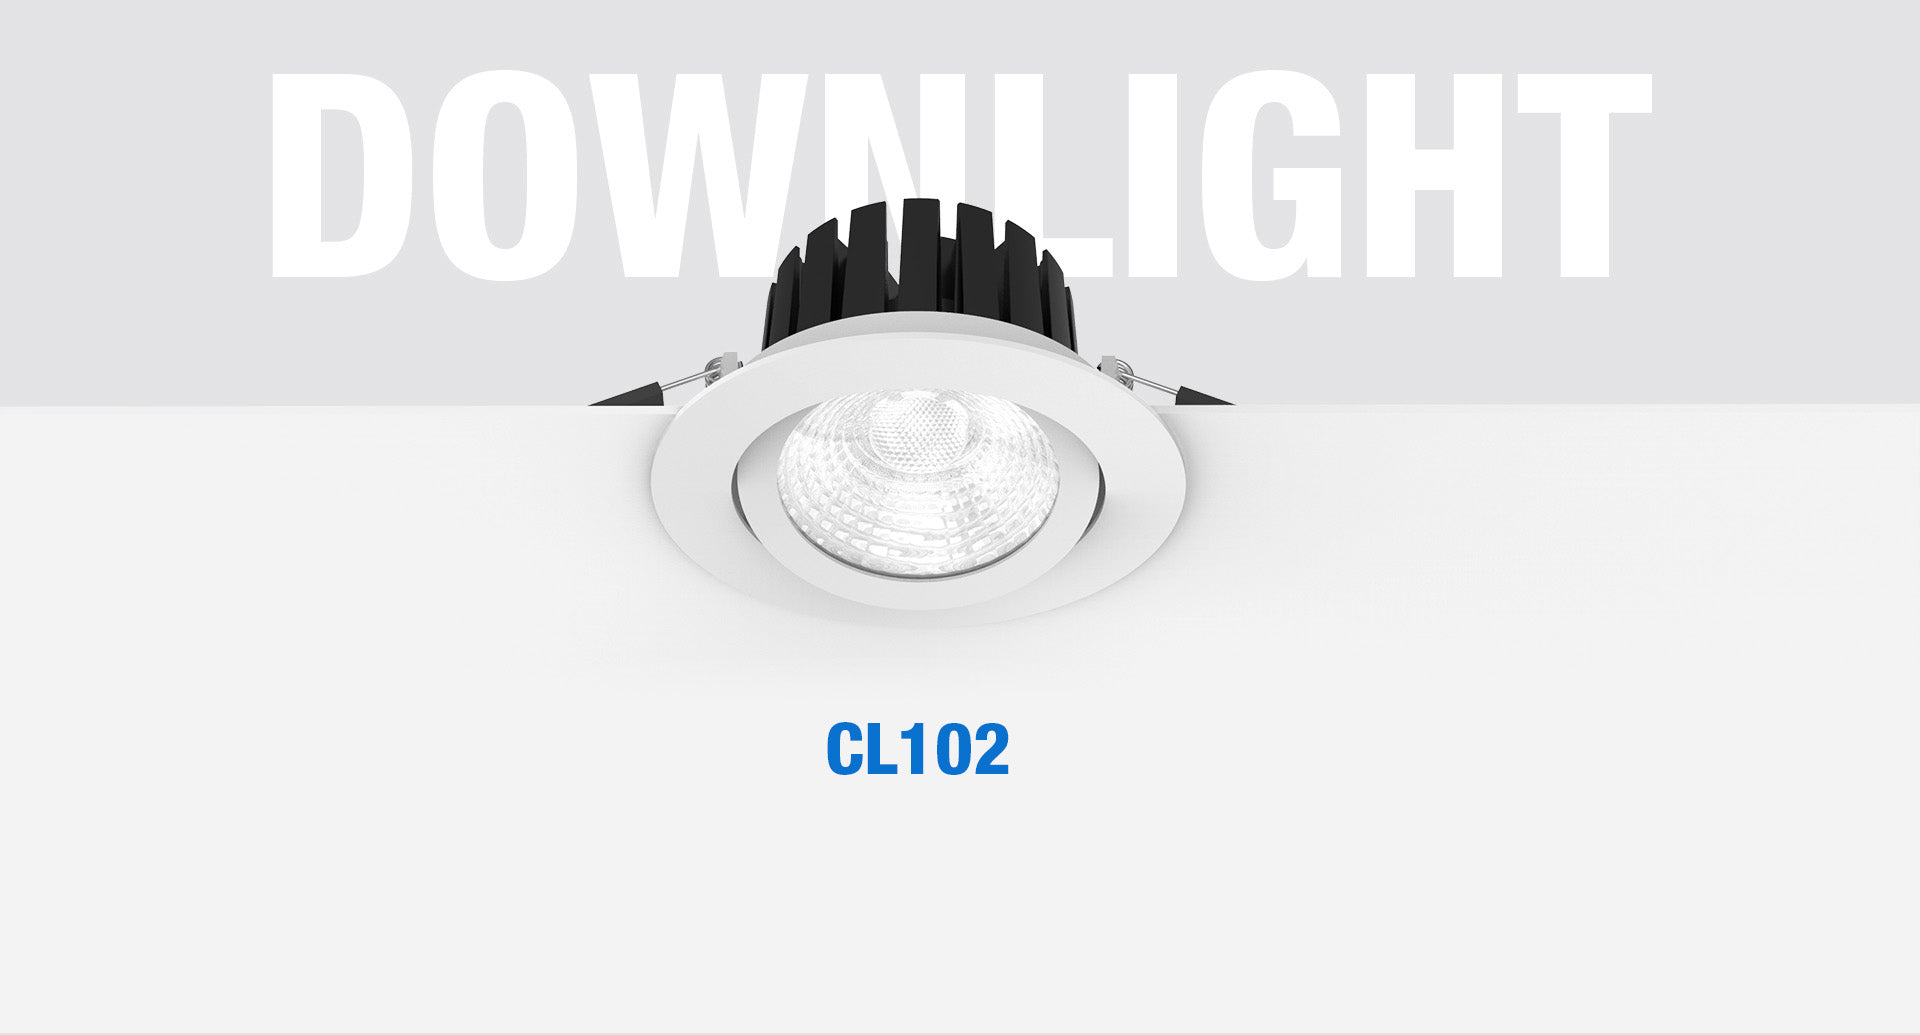 โคมไฟ LED Downlight รุ่น CL102 แบรนด์ BOX BRIGHT